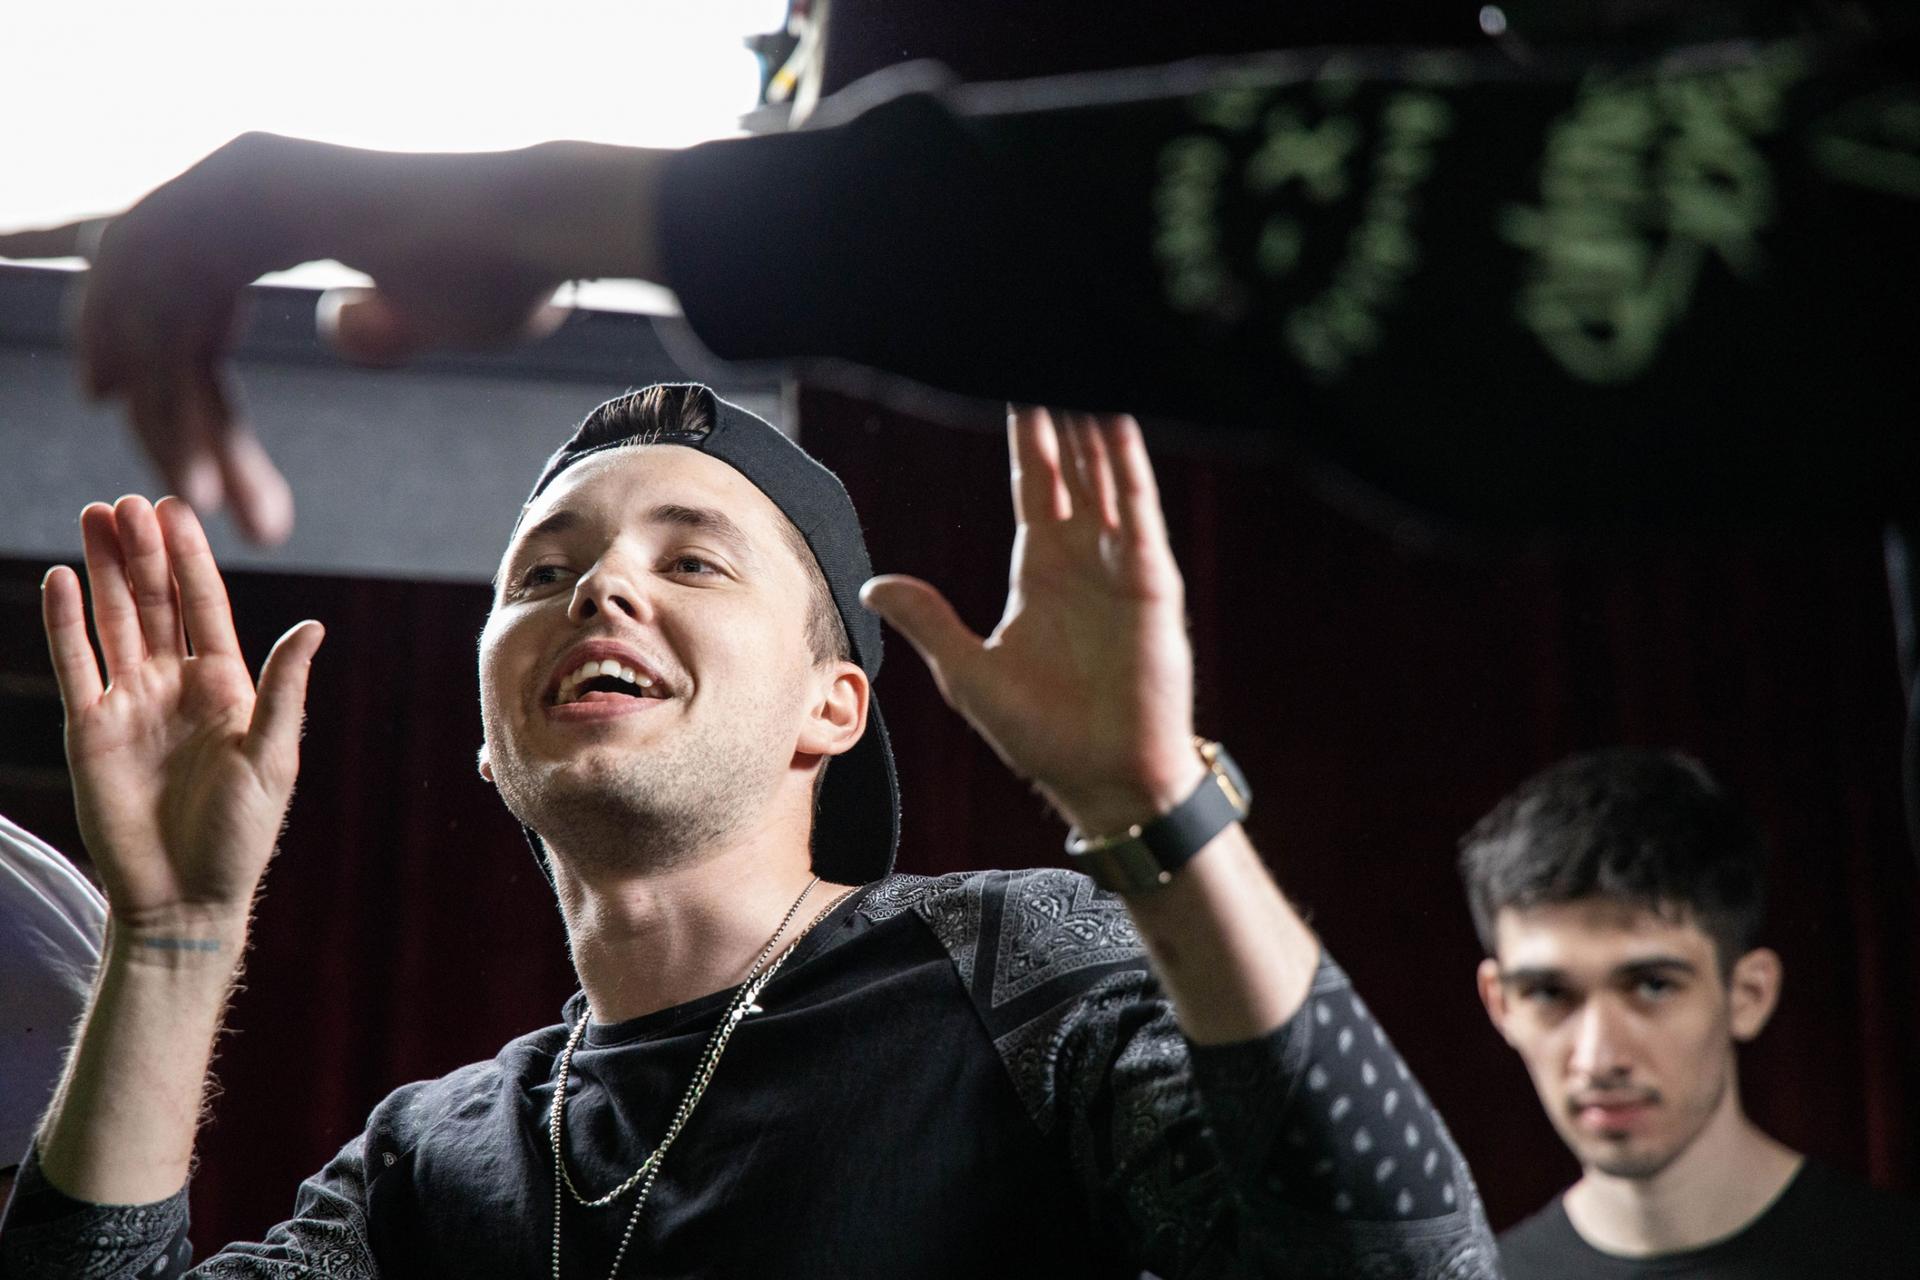 A rapper raises his hands at a crowd. 